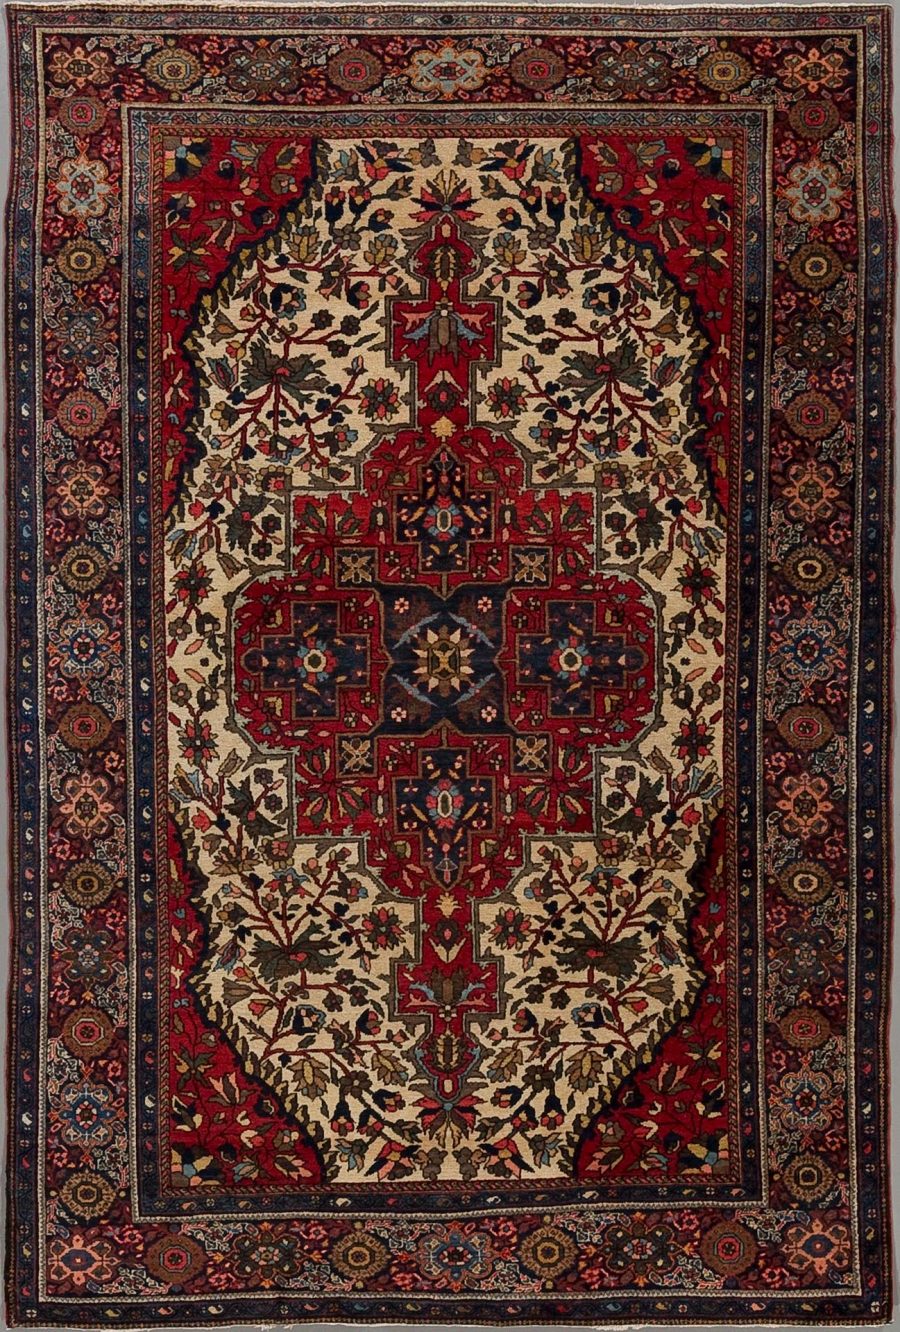 Traditioneller handgeknüpfter Teppich mit komplexem Muster aus Blumen- und geometrischen Formen in einer Farbpalette aus überwiegend Rot, Beige und Dunkelblau.